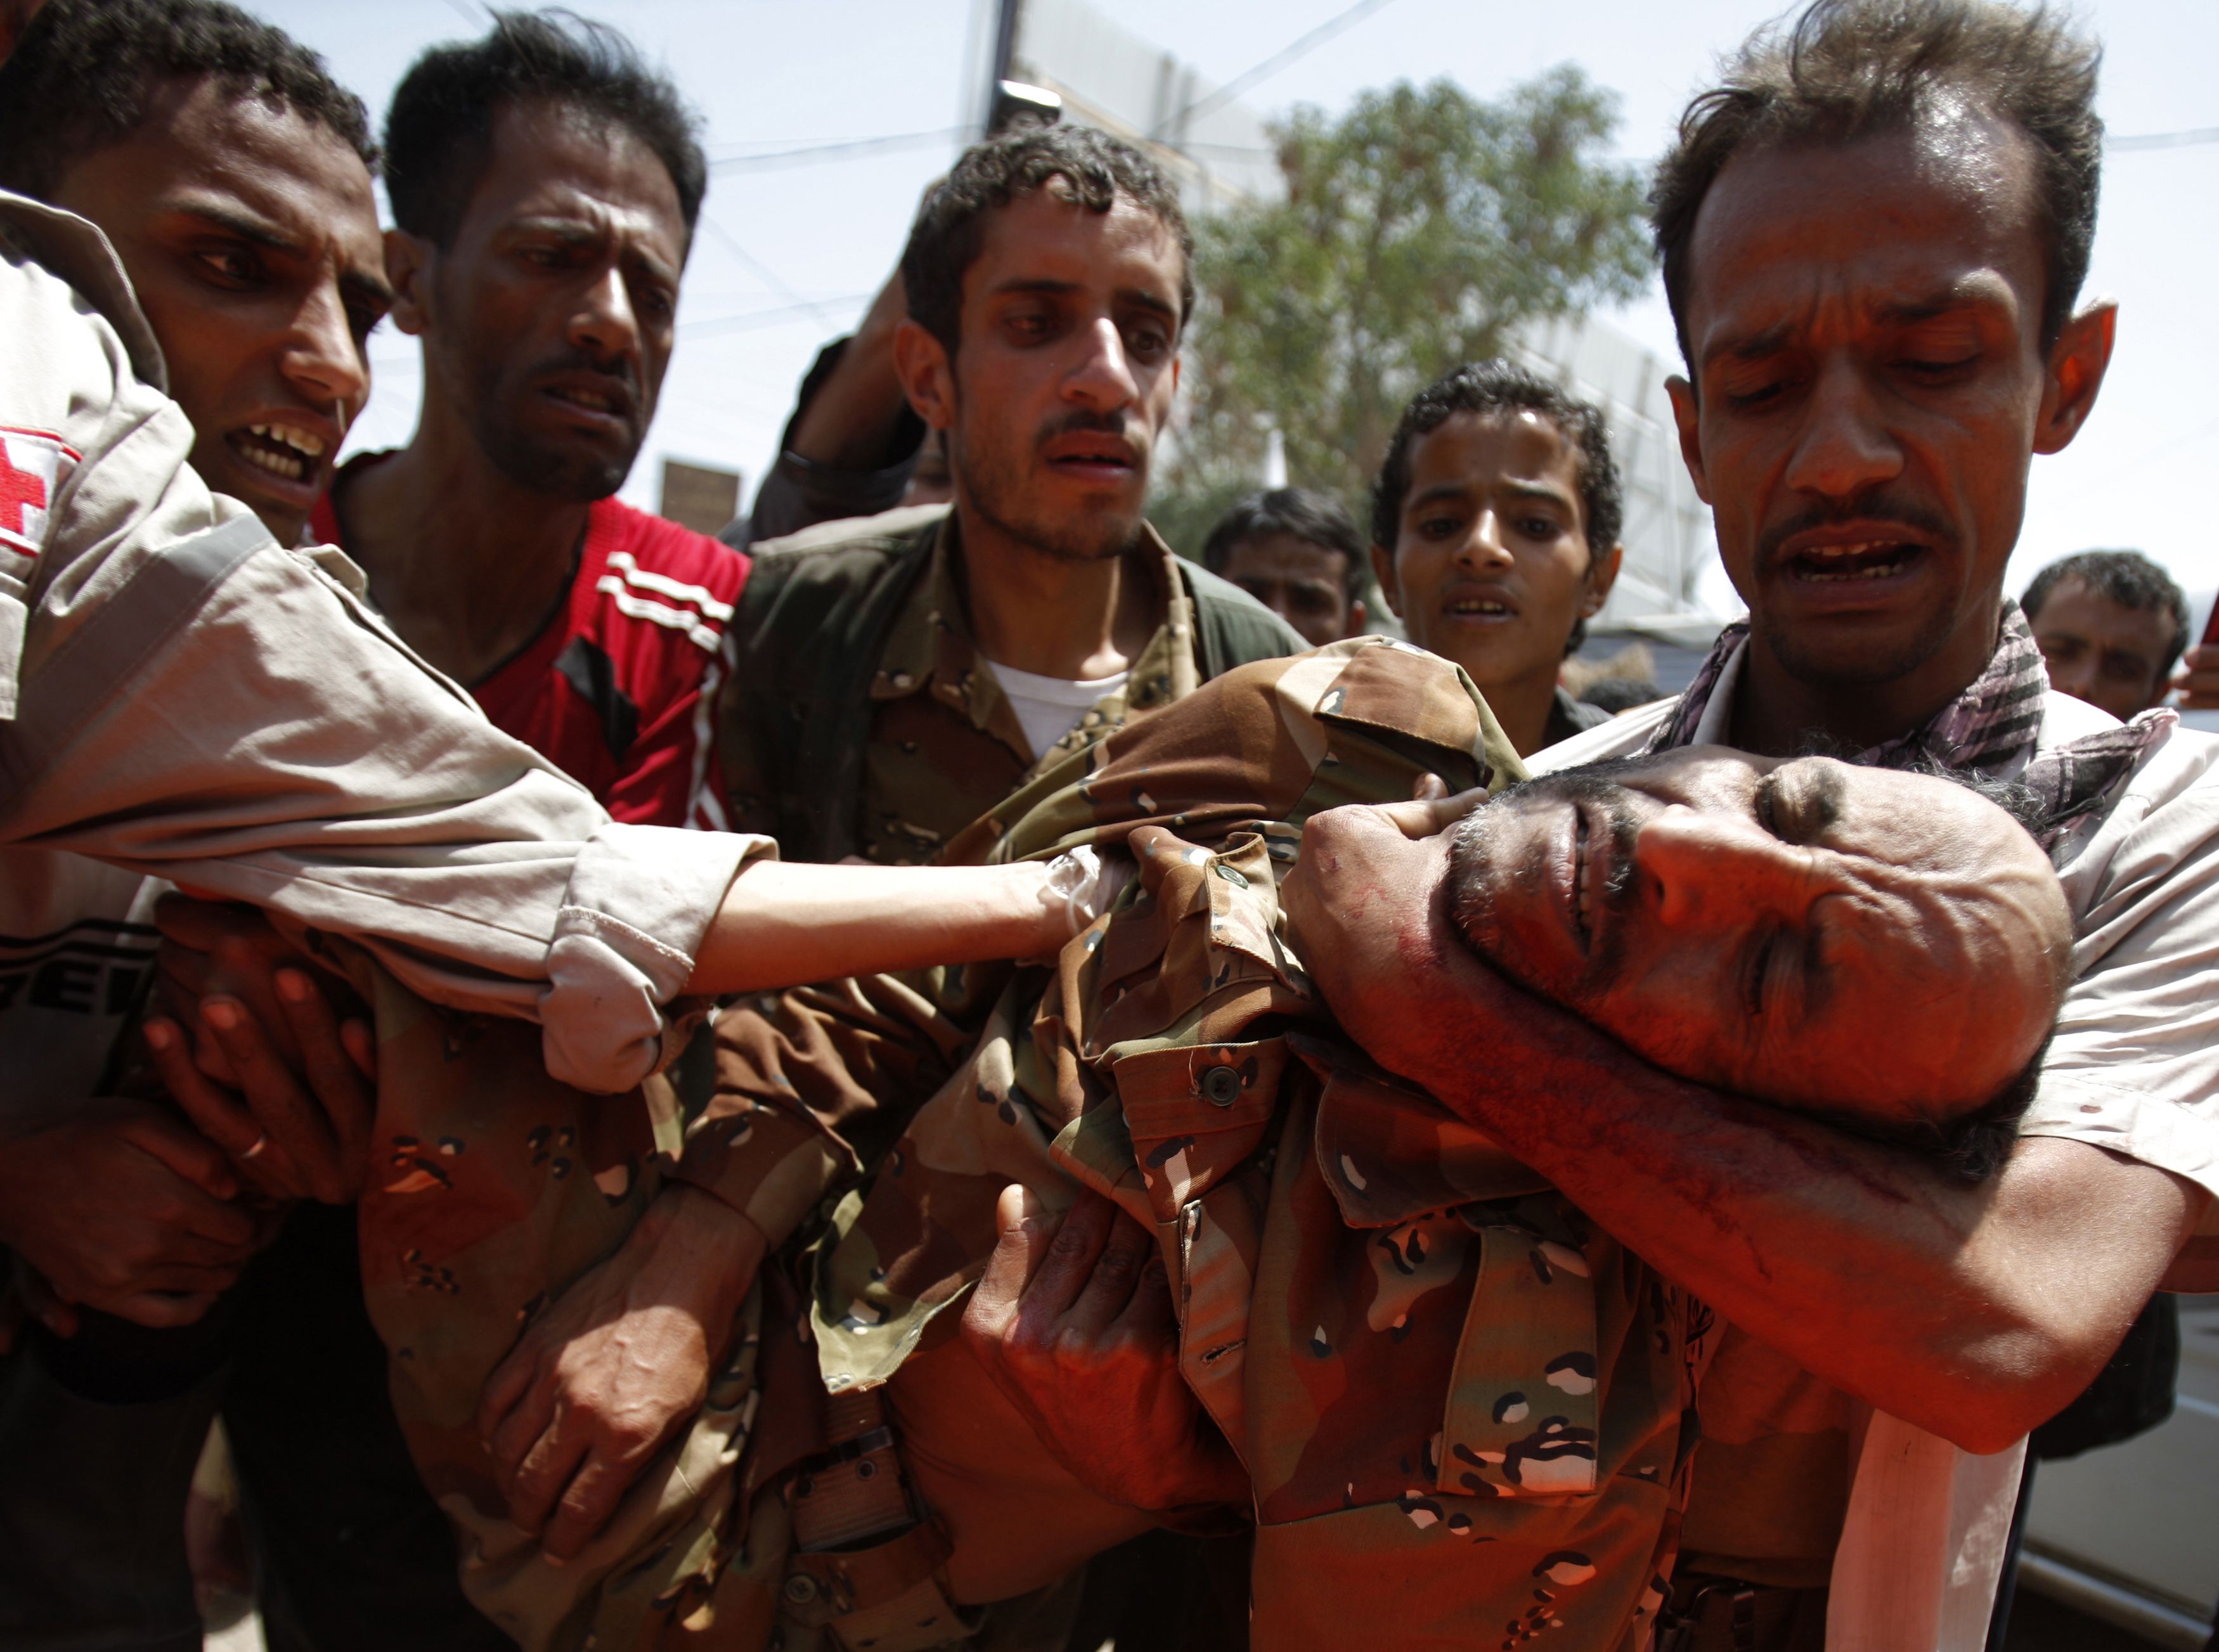 Συνεχίζονται οι αιματηρές συγκρούσεις στην Υεμένη